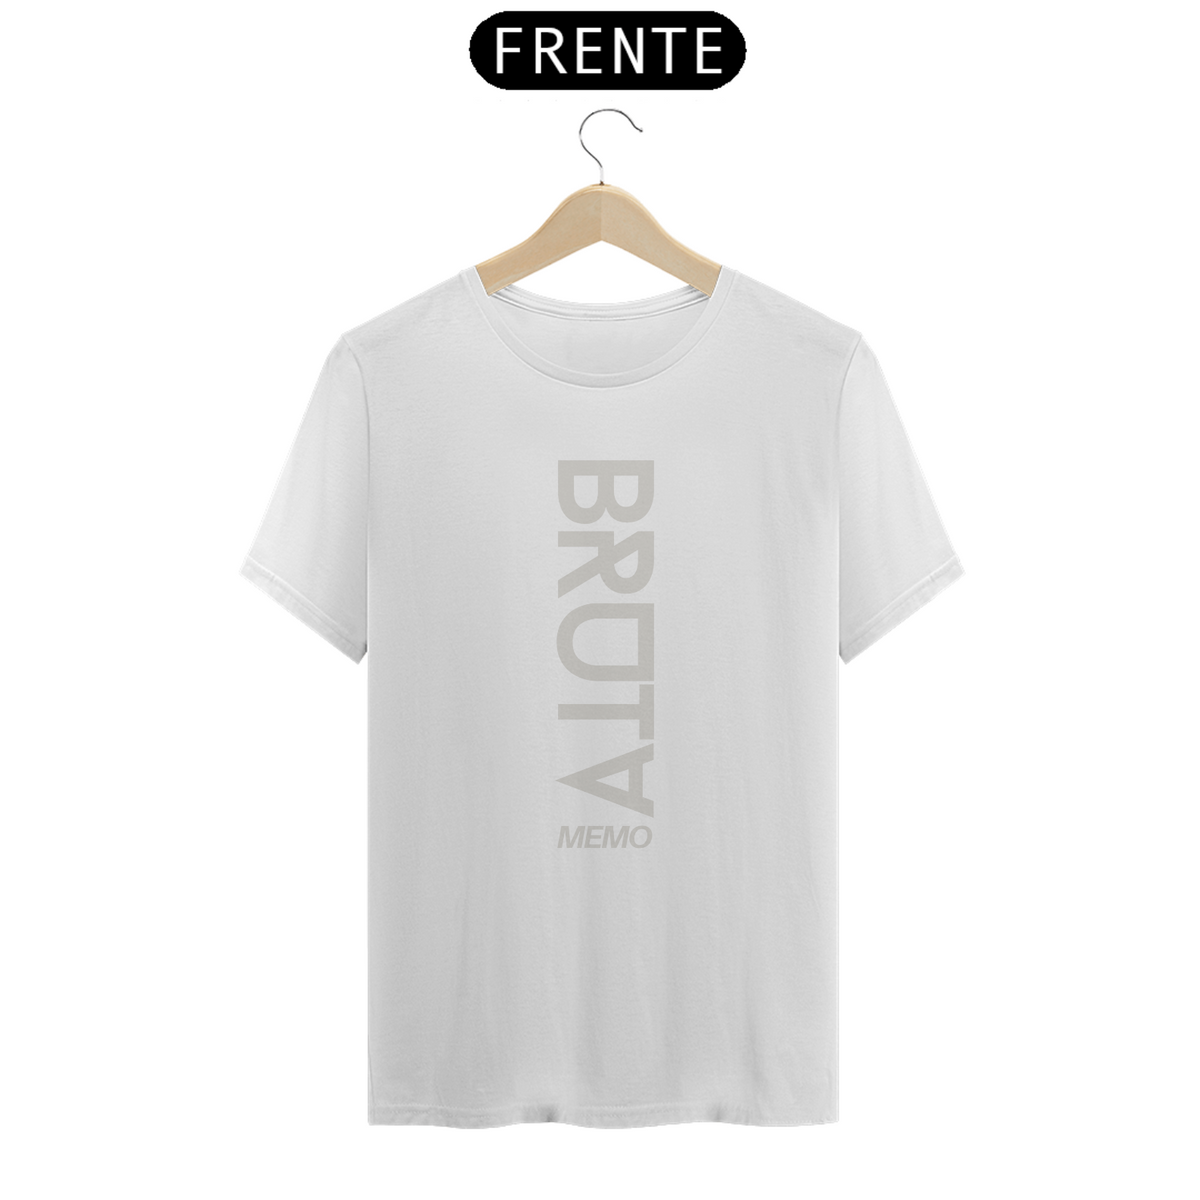 Nome do produto: Camiseta T-Shirt Classic Feminino / Bruta Memo